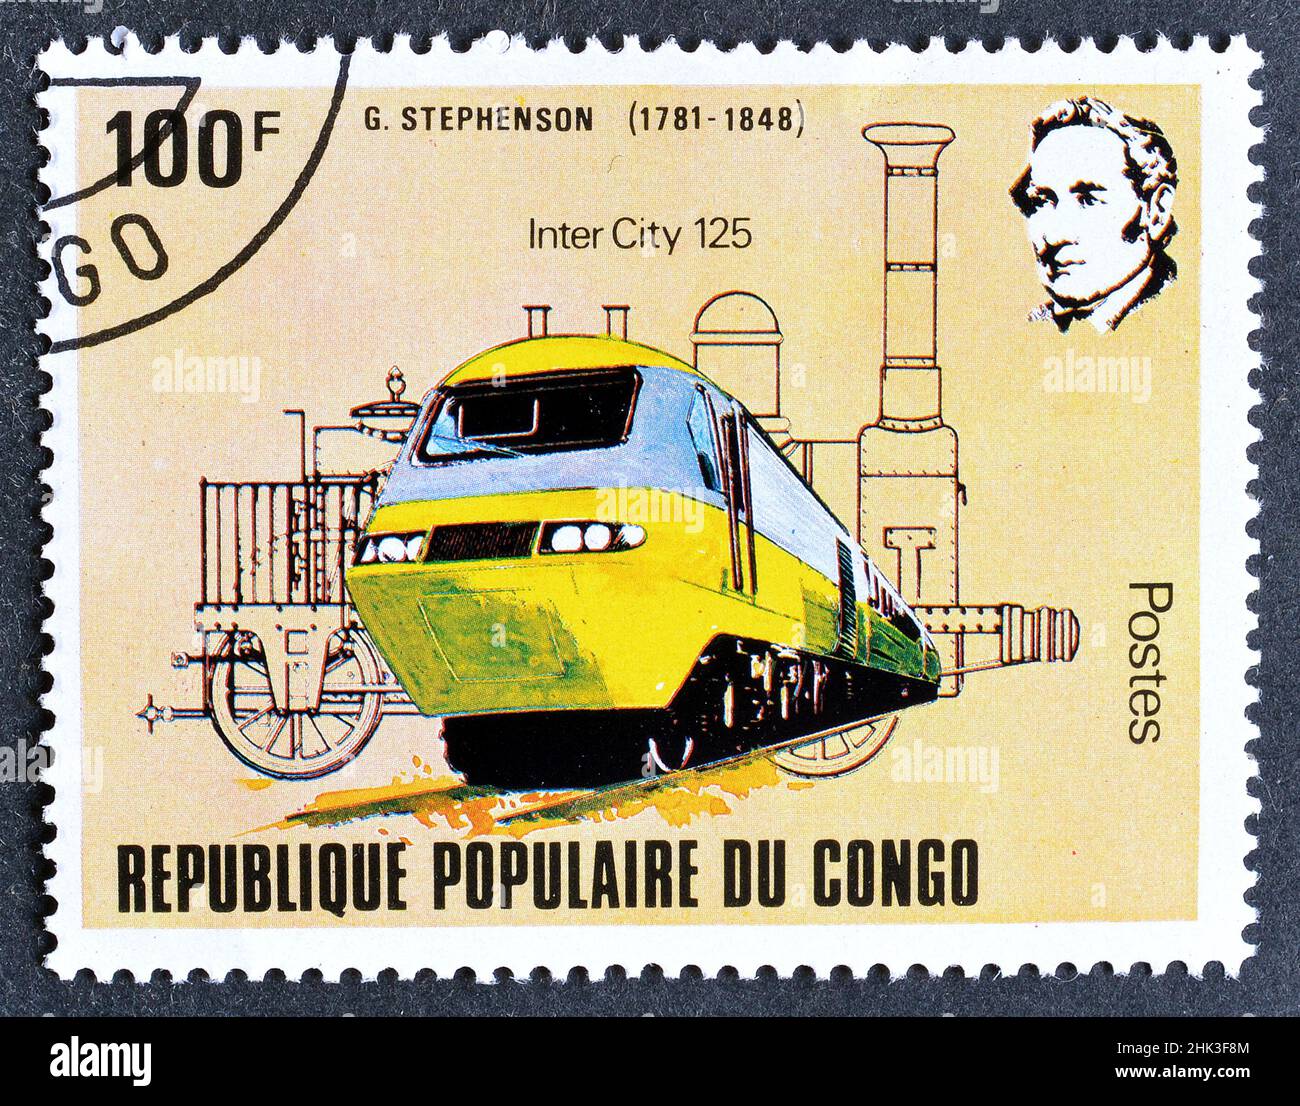 Timbre-poste annulé imprimé par le Congo, qui montre train Intercity 125, 200th anniversaire de George Stephenson (1781-1848), vers 1981. Banque D'Images